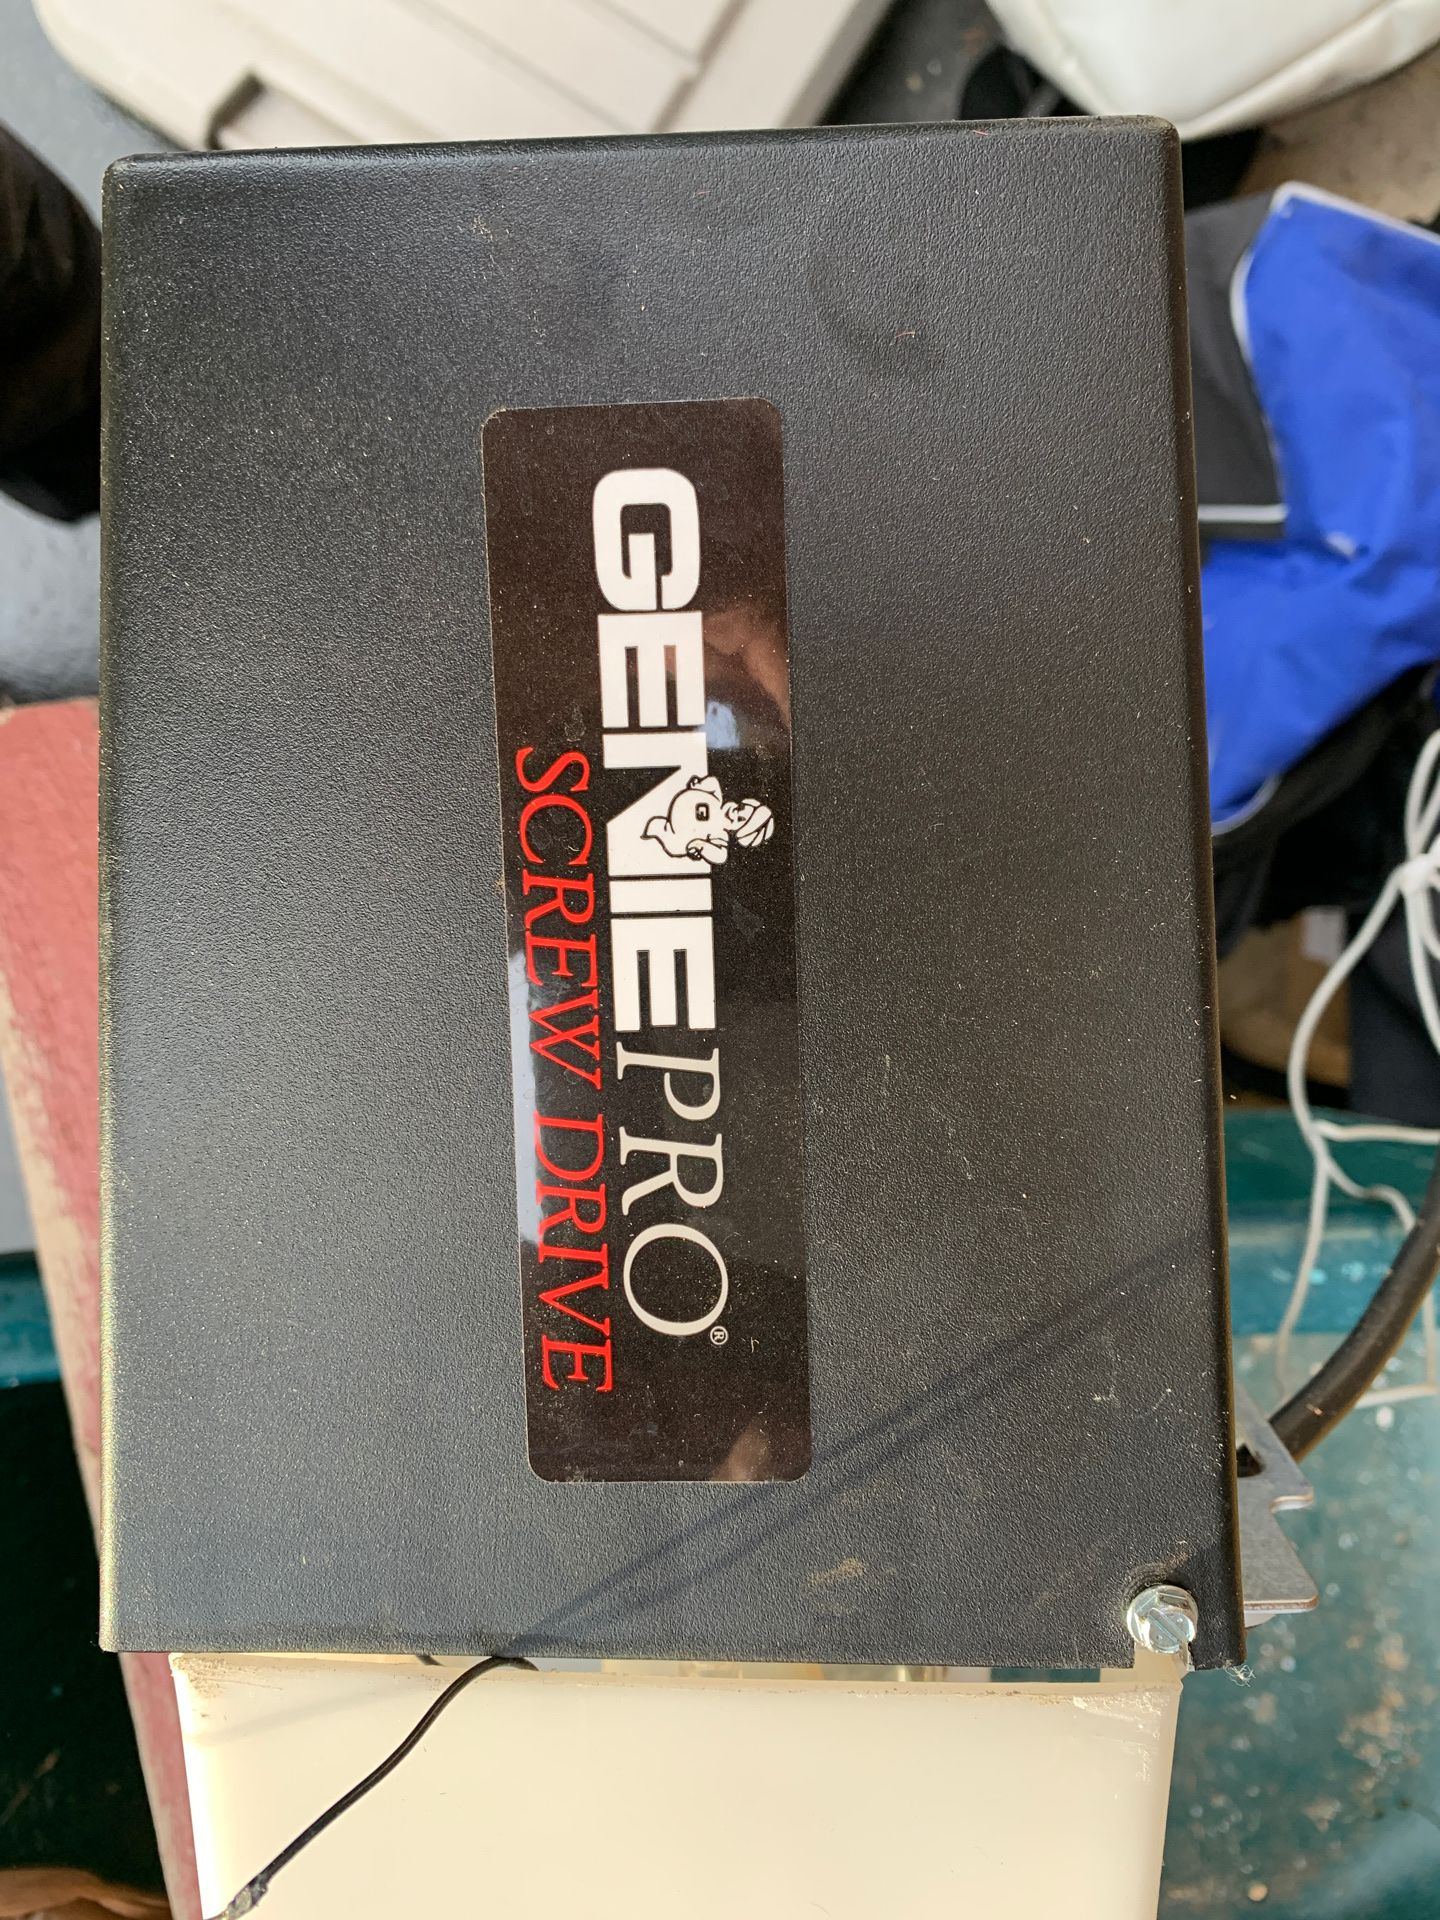 Genie Pro Screw Drive Garage door opener